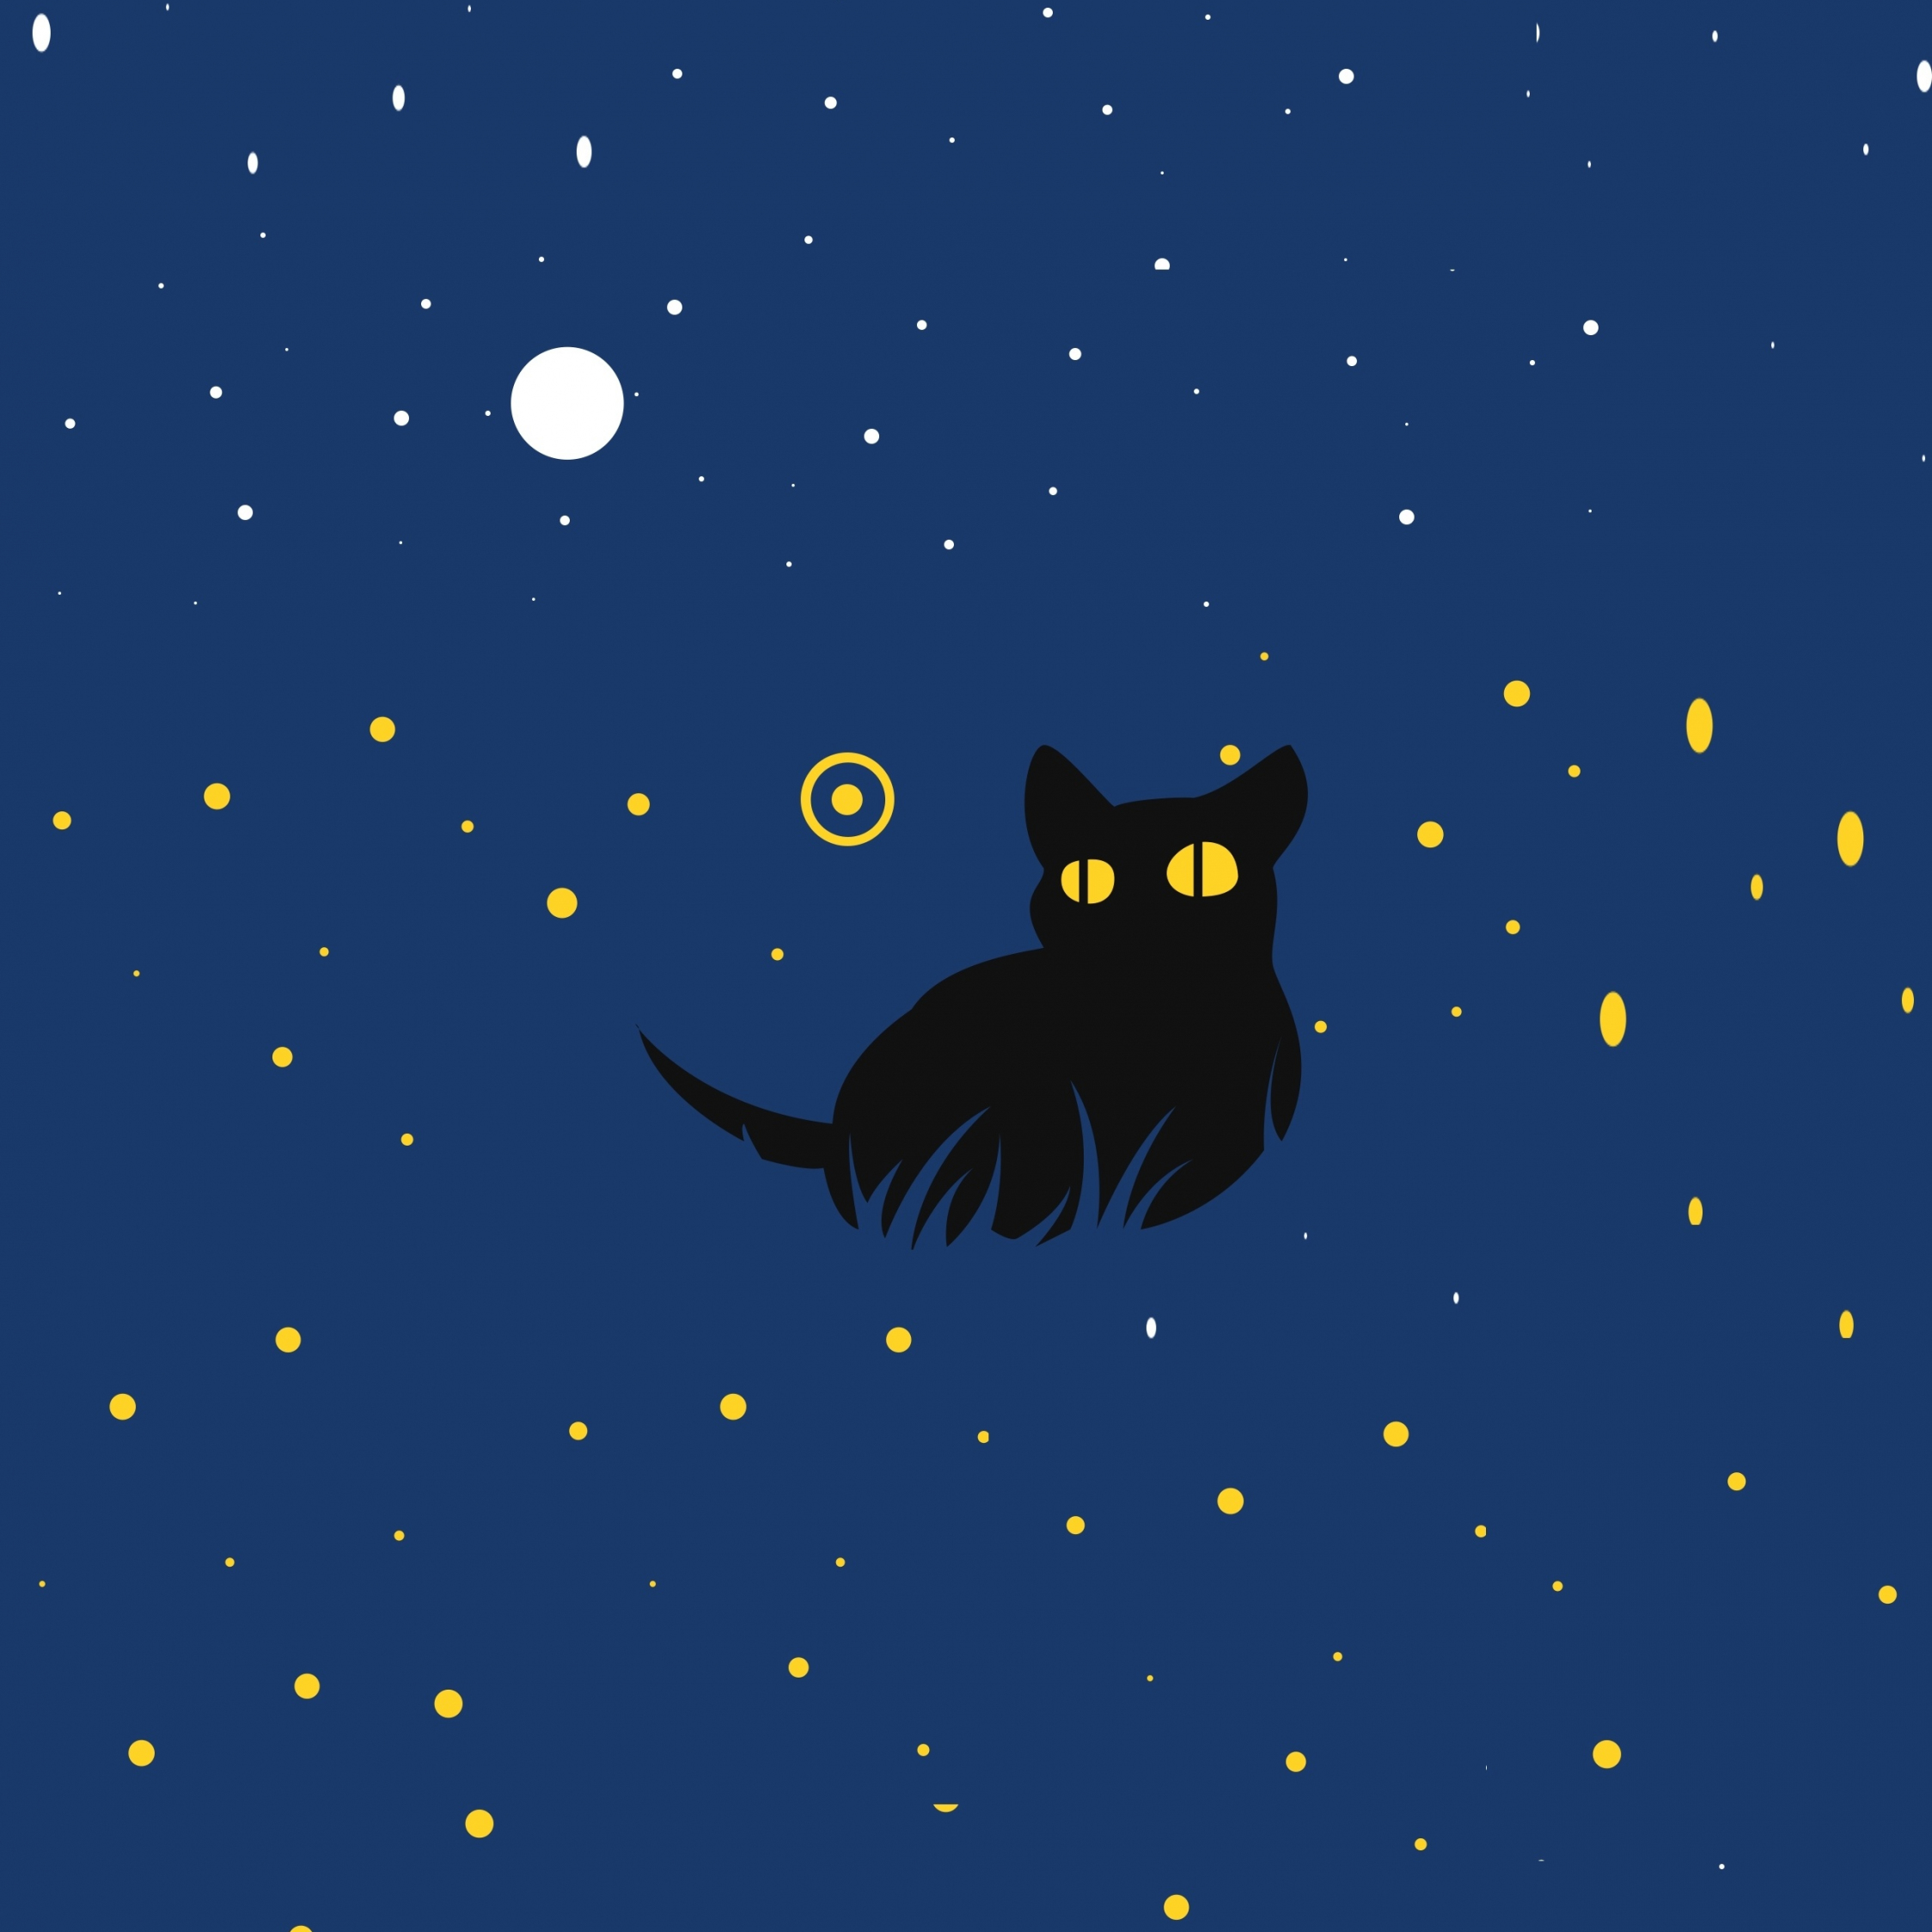 Hãy tải ngay hình nền 2248x2248 mèo đen dễ thương với nghệ thuật tối giản cho chiếc iPad của bạn. Sự hòa quyện giữa bóng tối và sự đáng yêu của chú mèo này sẽ khiến bạn say đắm ngay từ cái nhìn đầu tiên. Đừng bỏ lỡ cơ hội để có một màn hình chủ đề mới thú vị!